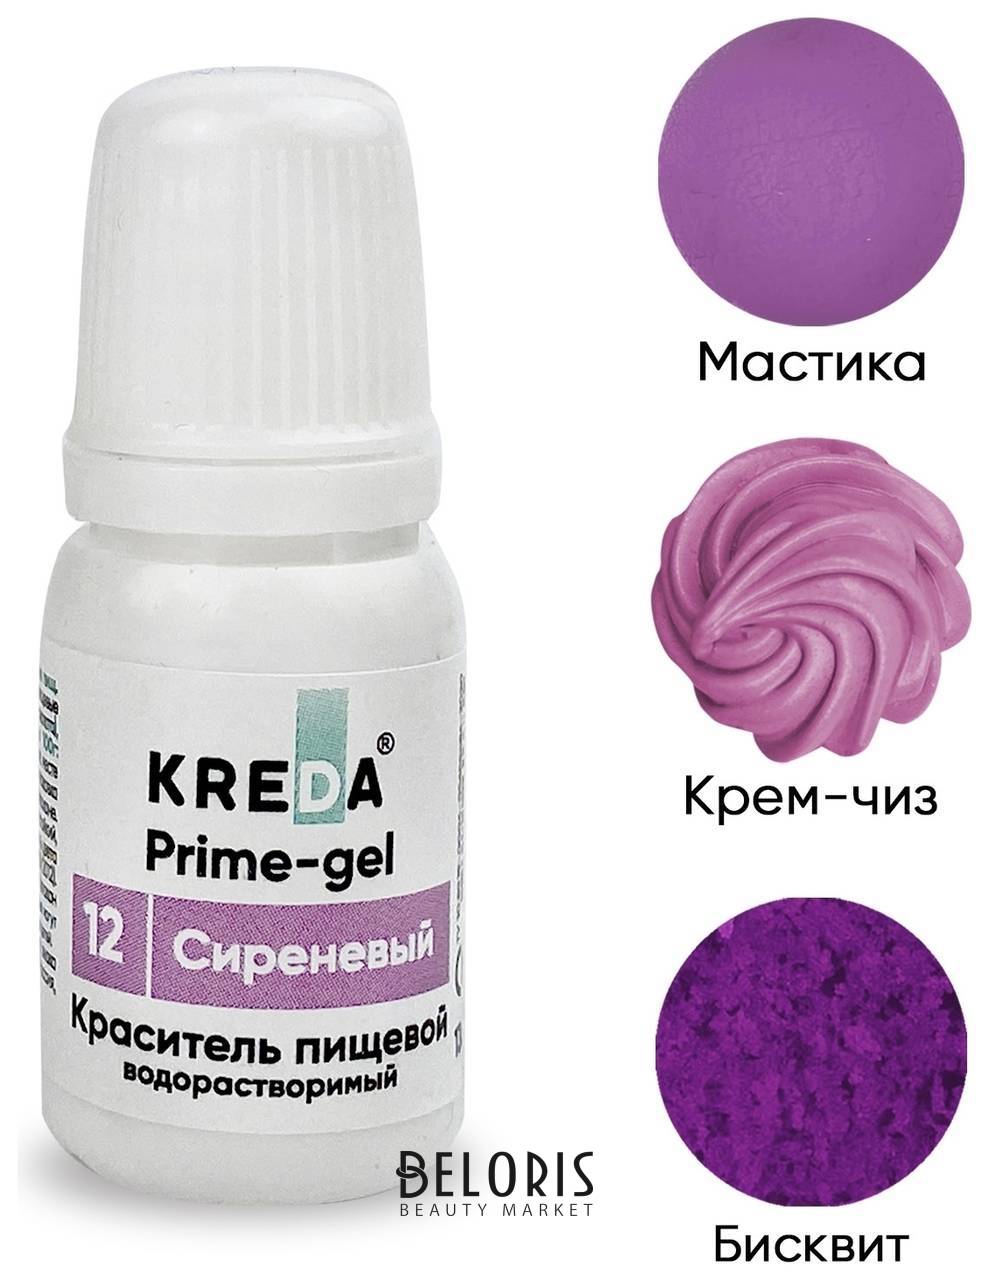 Краситель пищевой водорастворимый Prime-gel Kreda